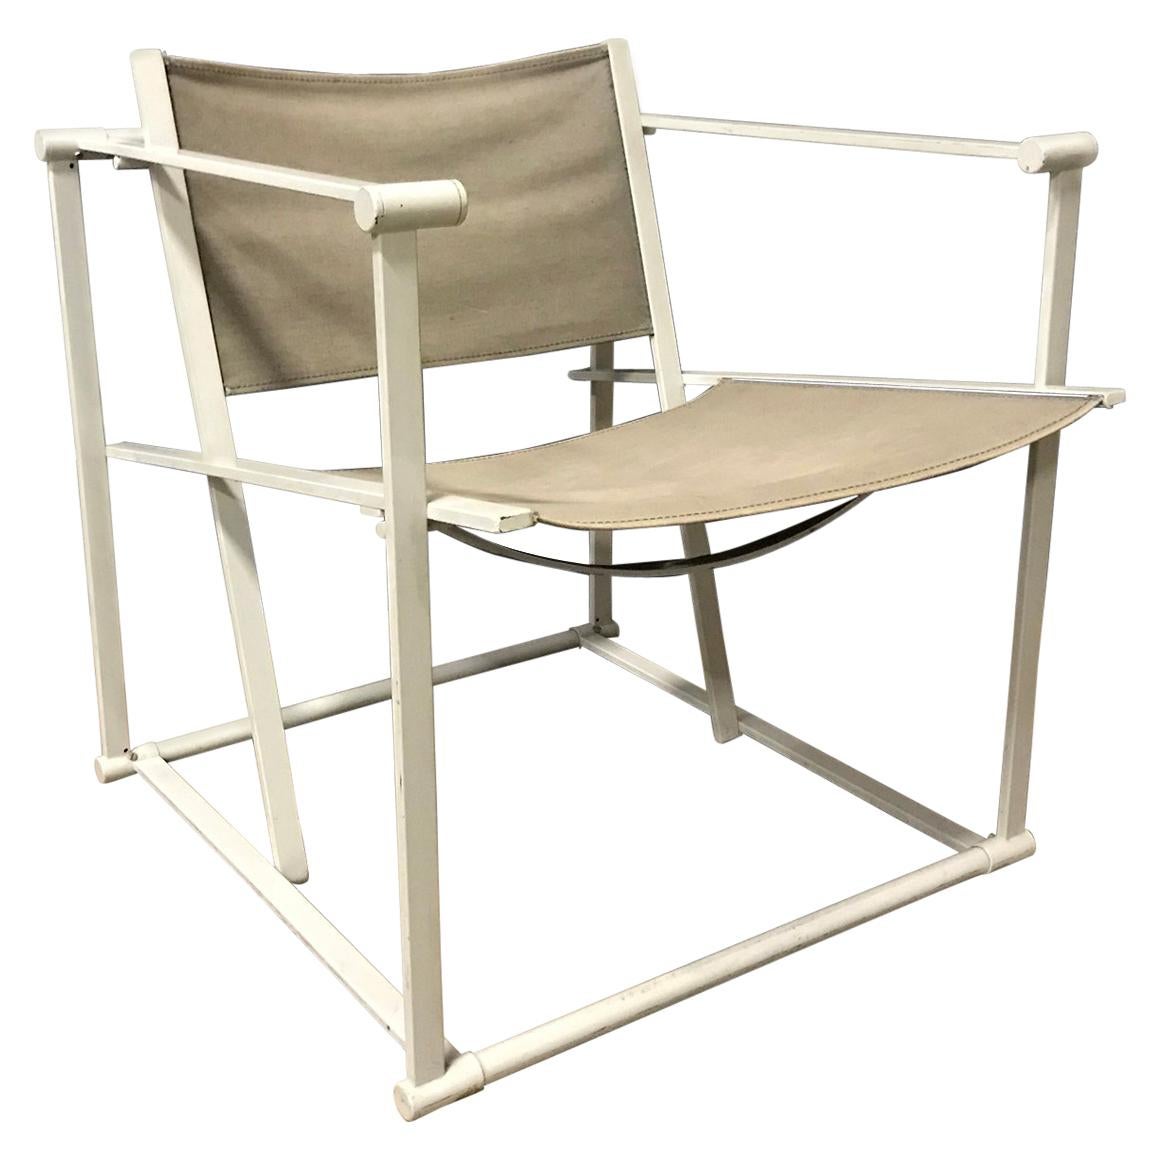 1980, Radboud Van Beekum for Pastoe, FM62 Cube Lounge Chair in Linen